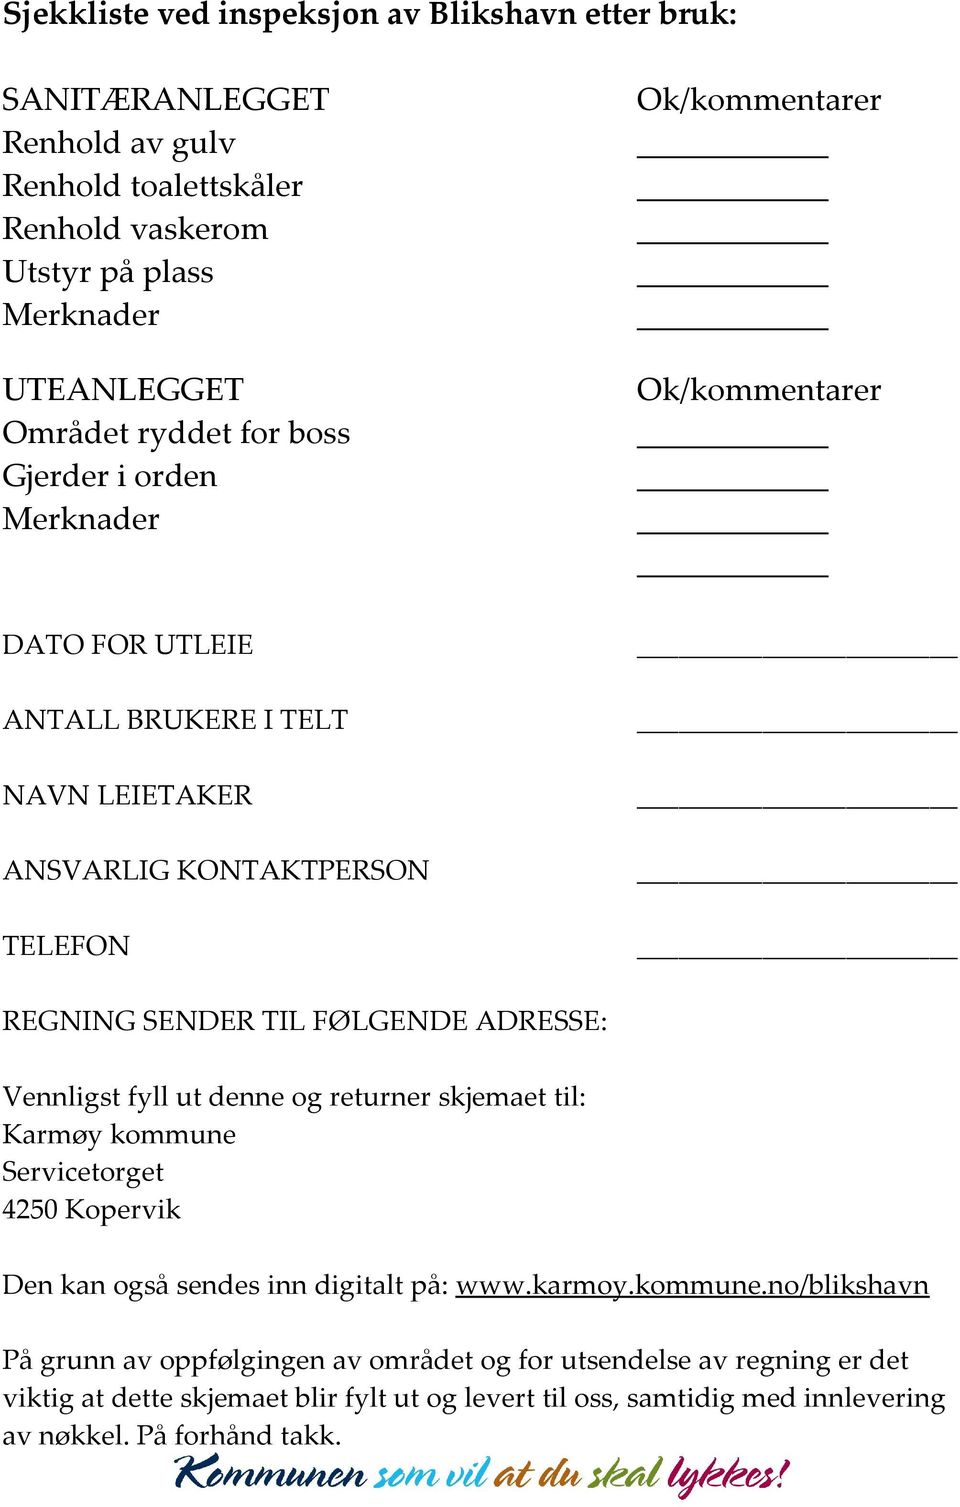 FØLGENDE ADRESSE: Vennligst fyll ut denne og returner skjemaet til: Karmøy kommune 